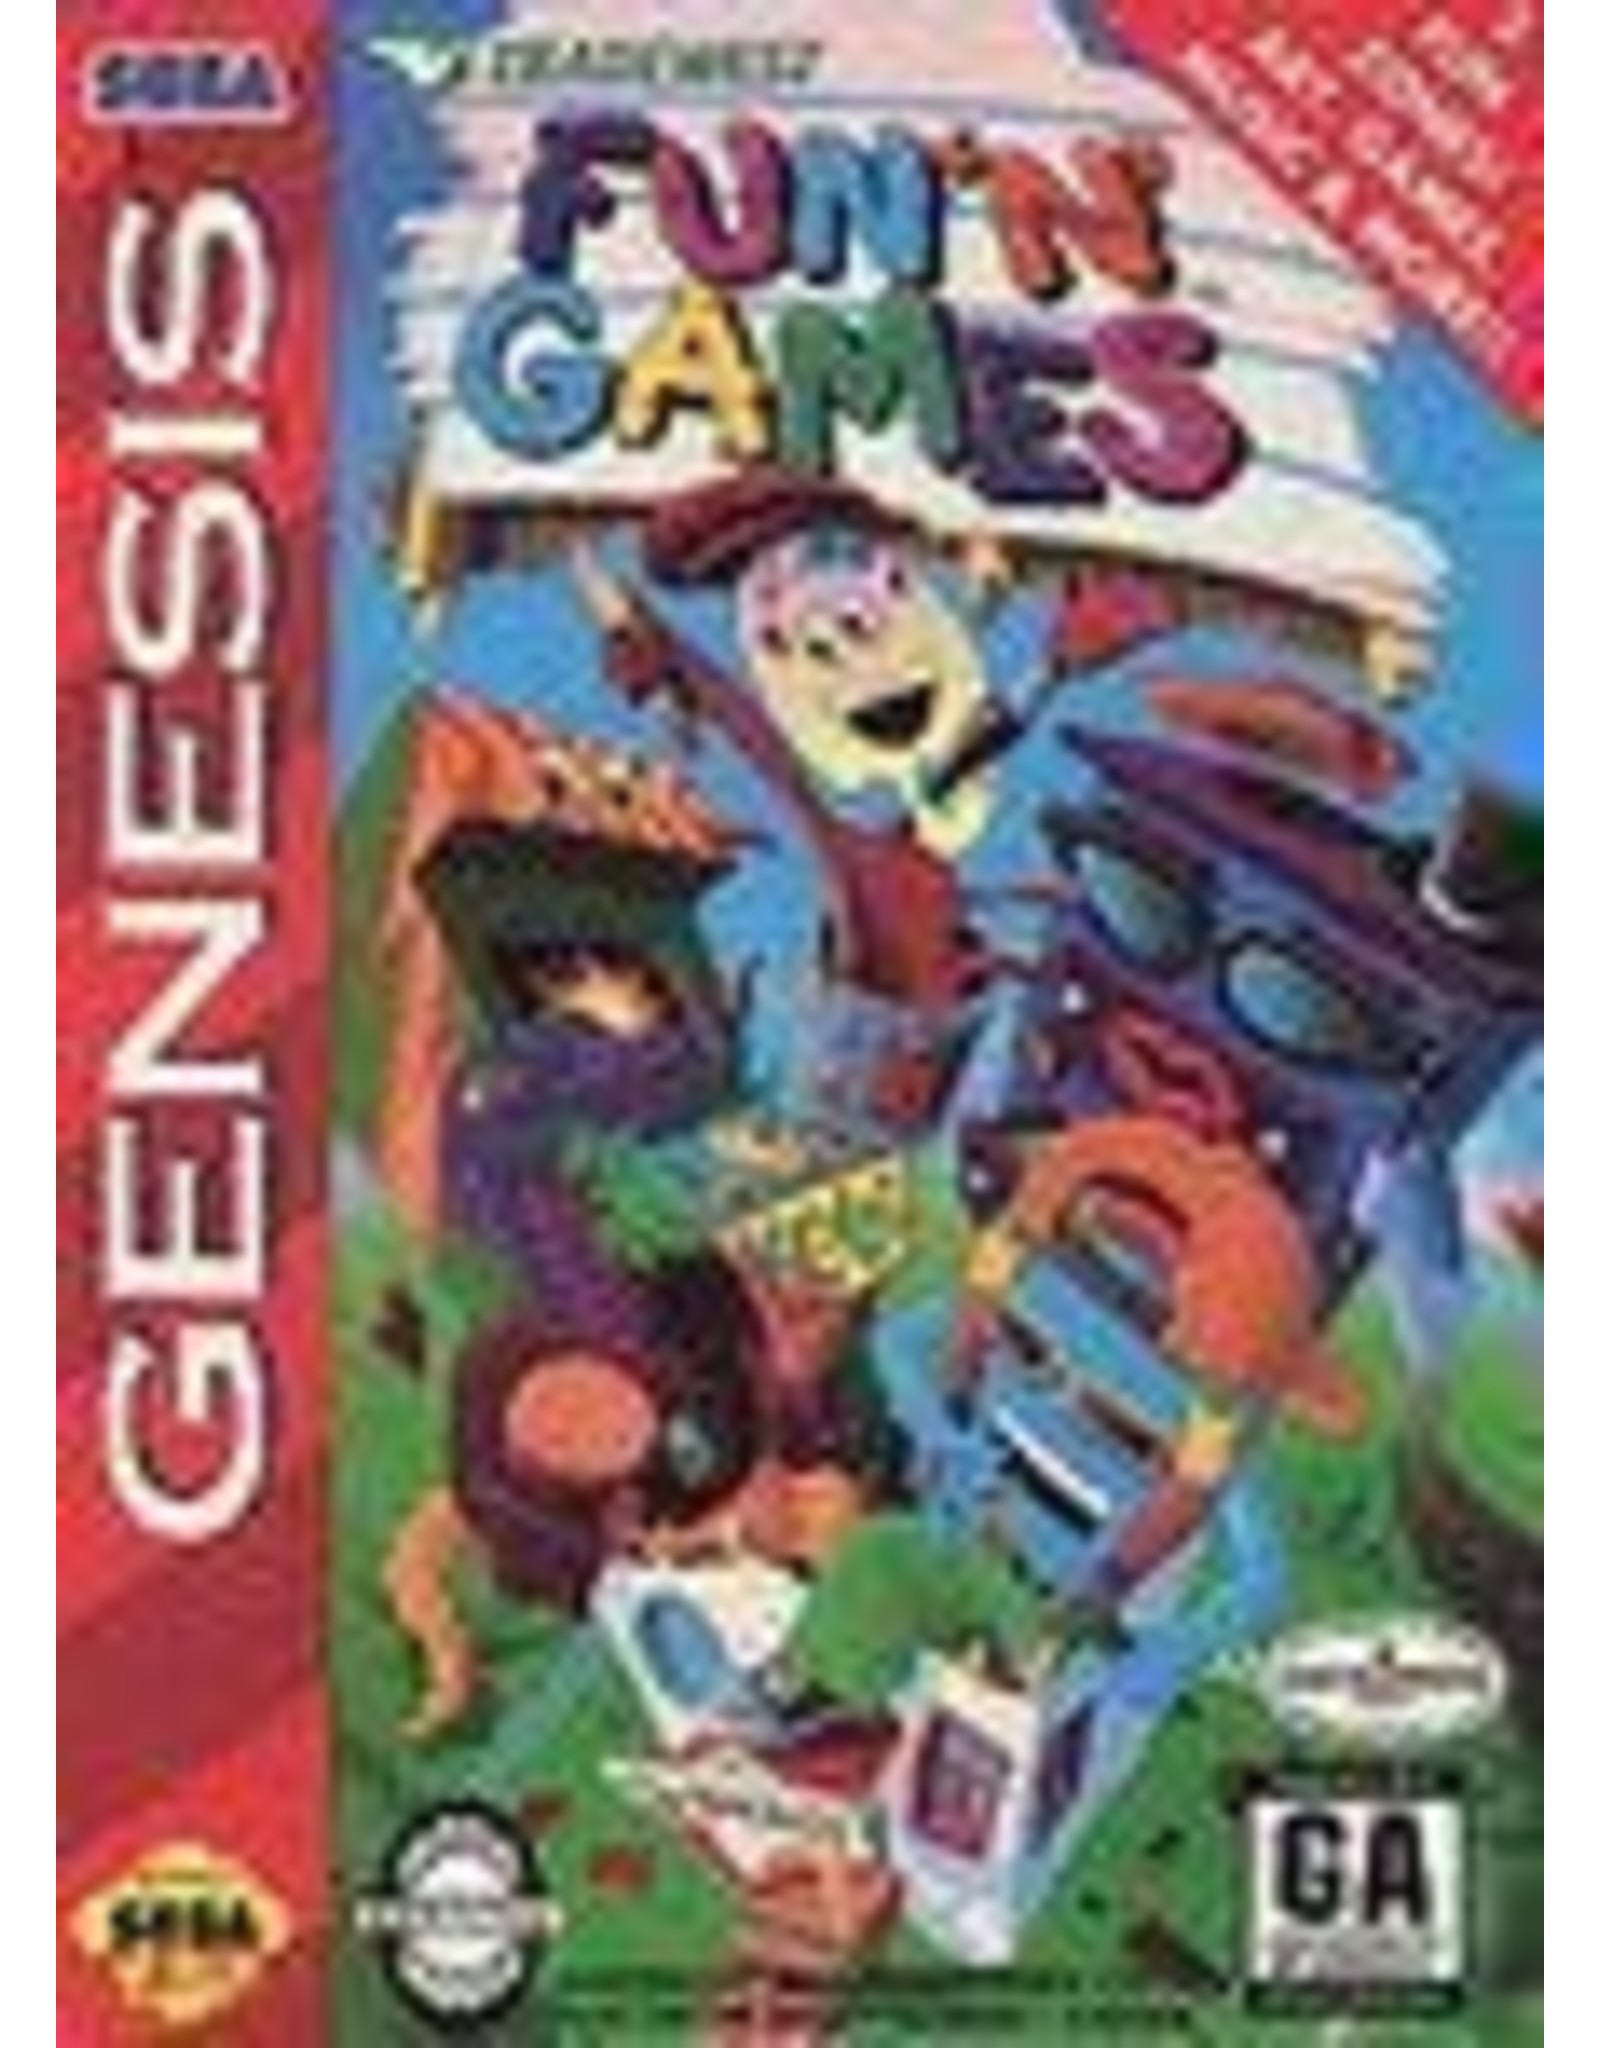 Sega Genesis Fun 'n Games (Boxed, No Manual)